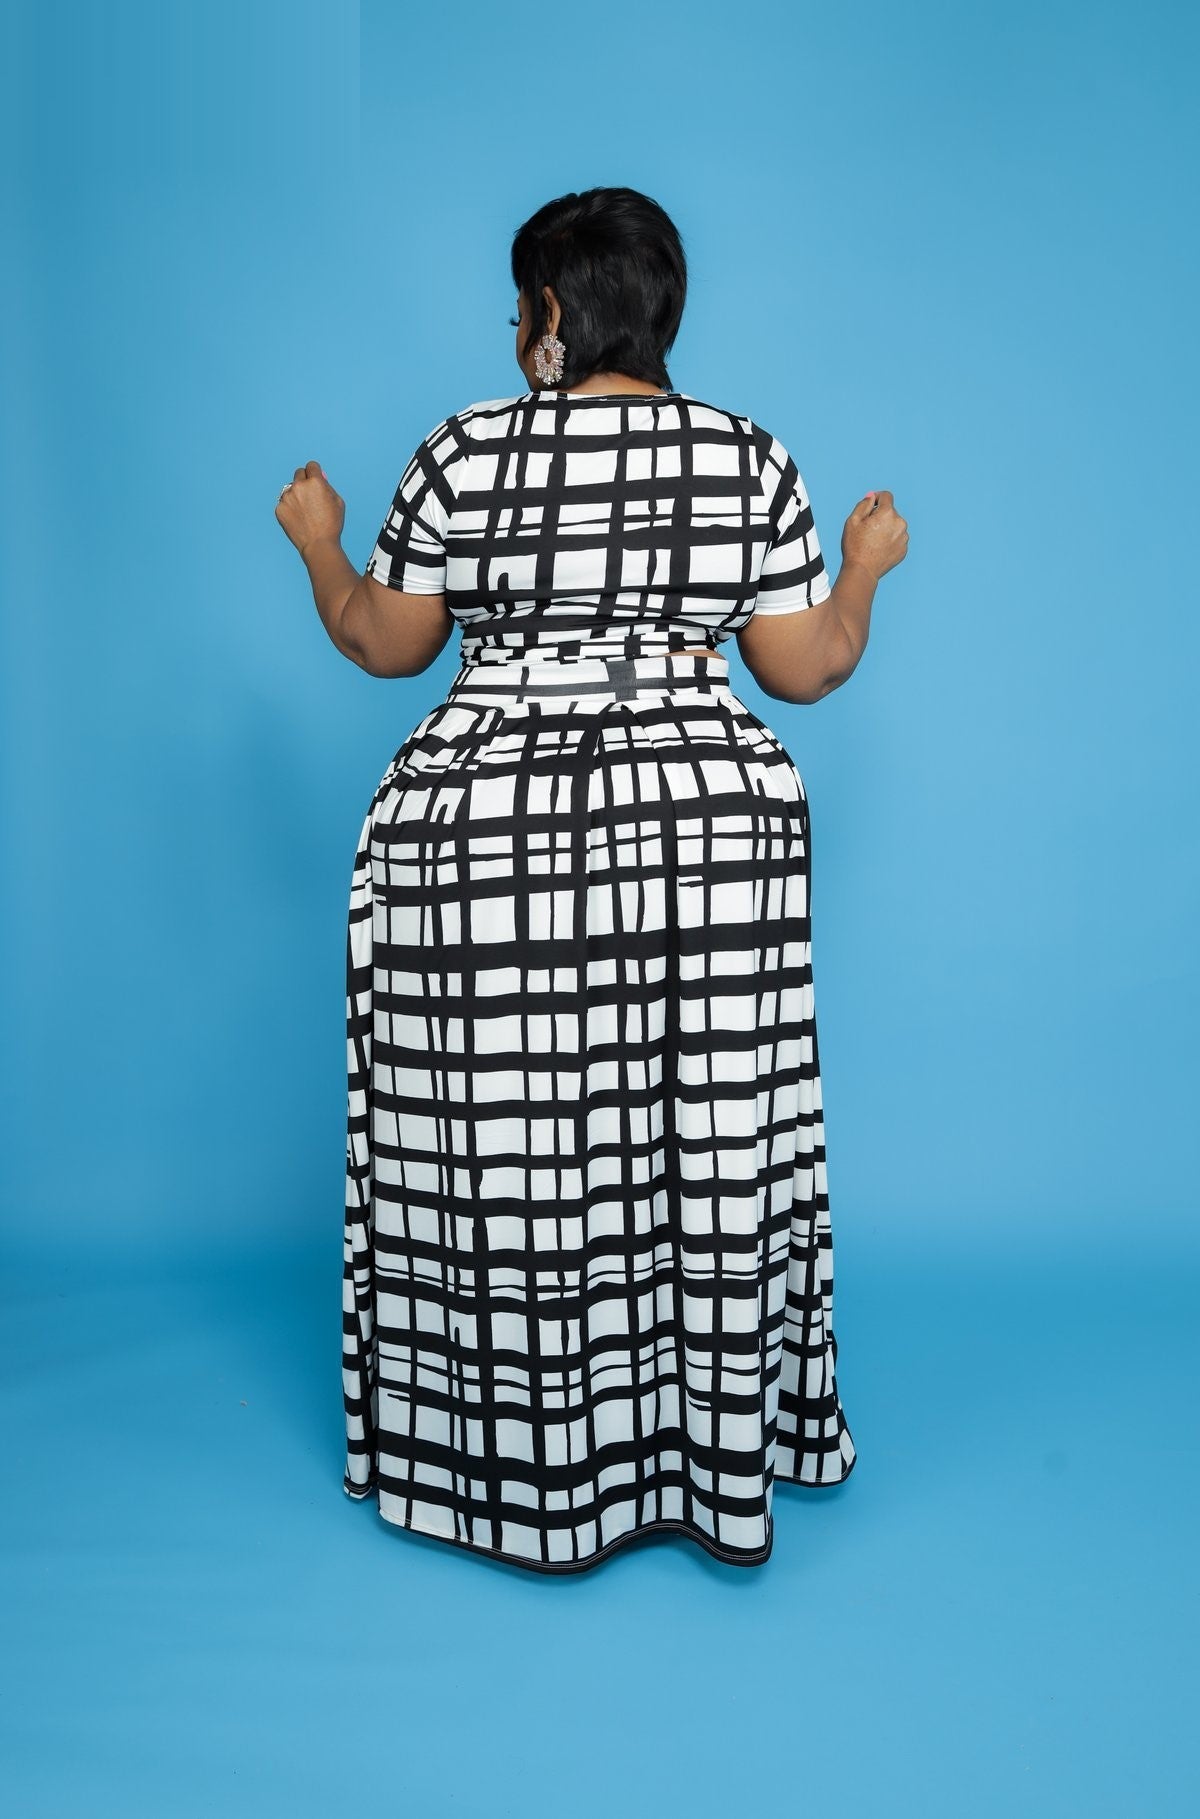 5XL Bold Grid Print Crop Top w/ Long Skirt Plus Size Women